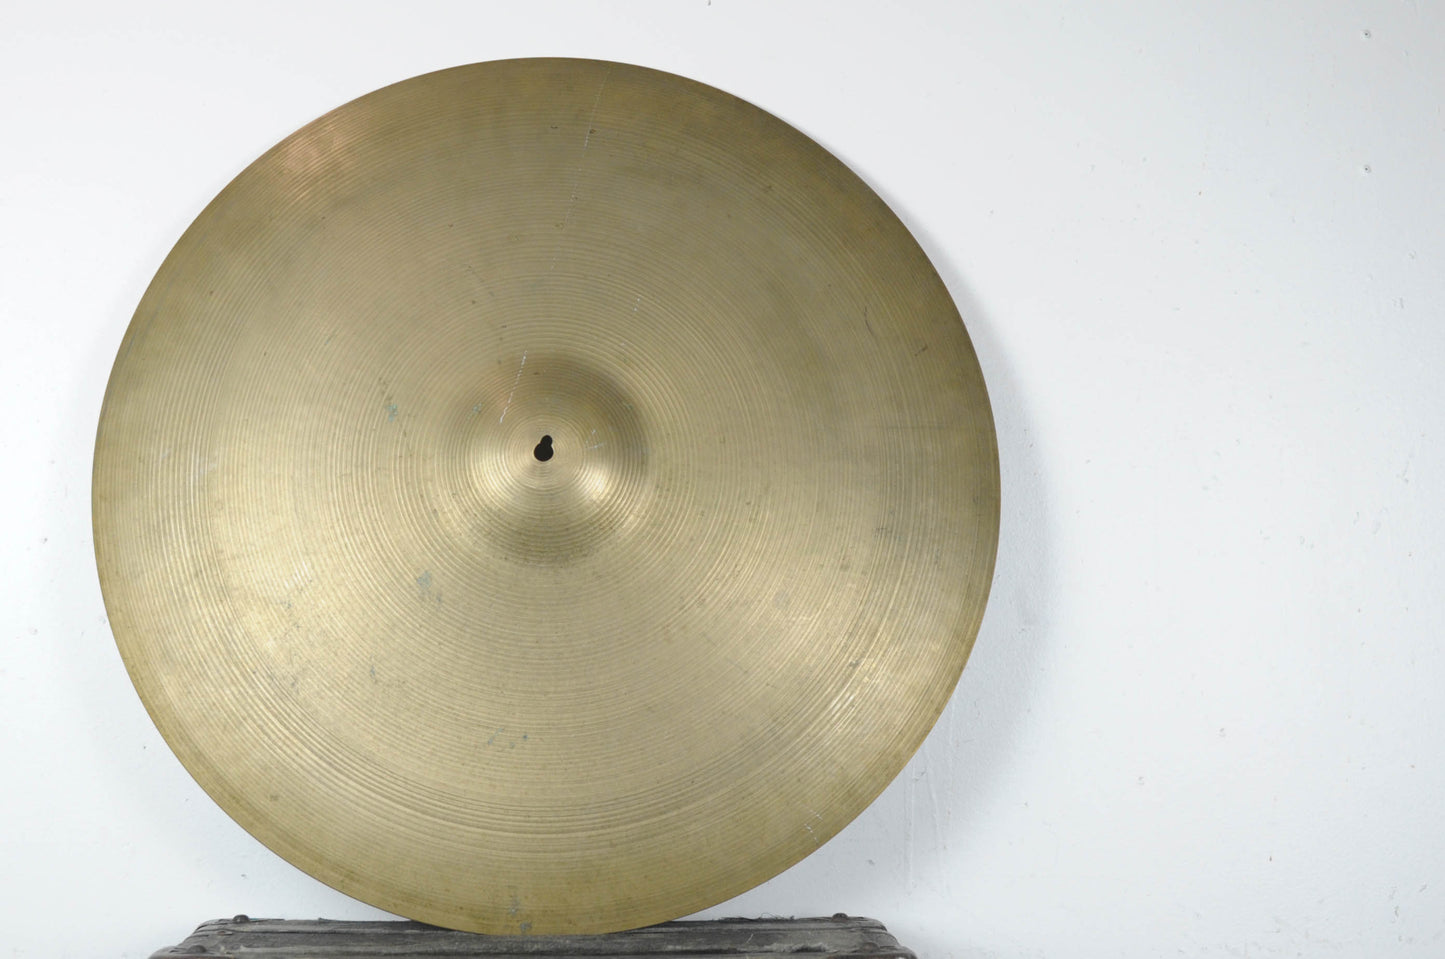 1960s Zildjian A 24" Ride Cymbal 4207g